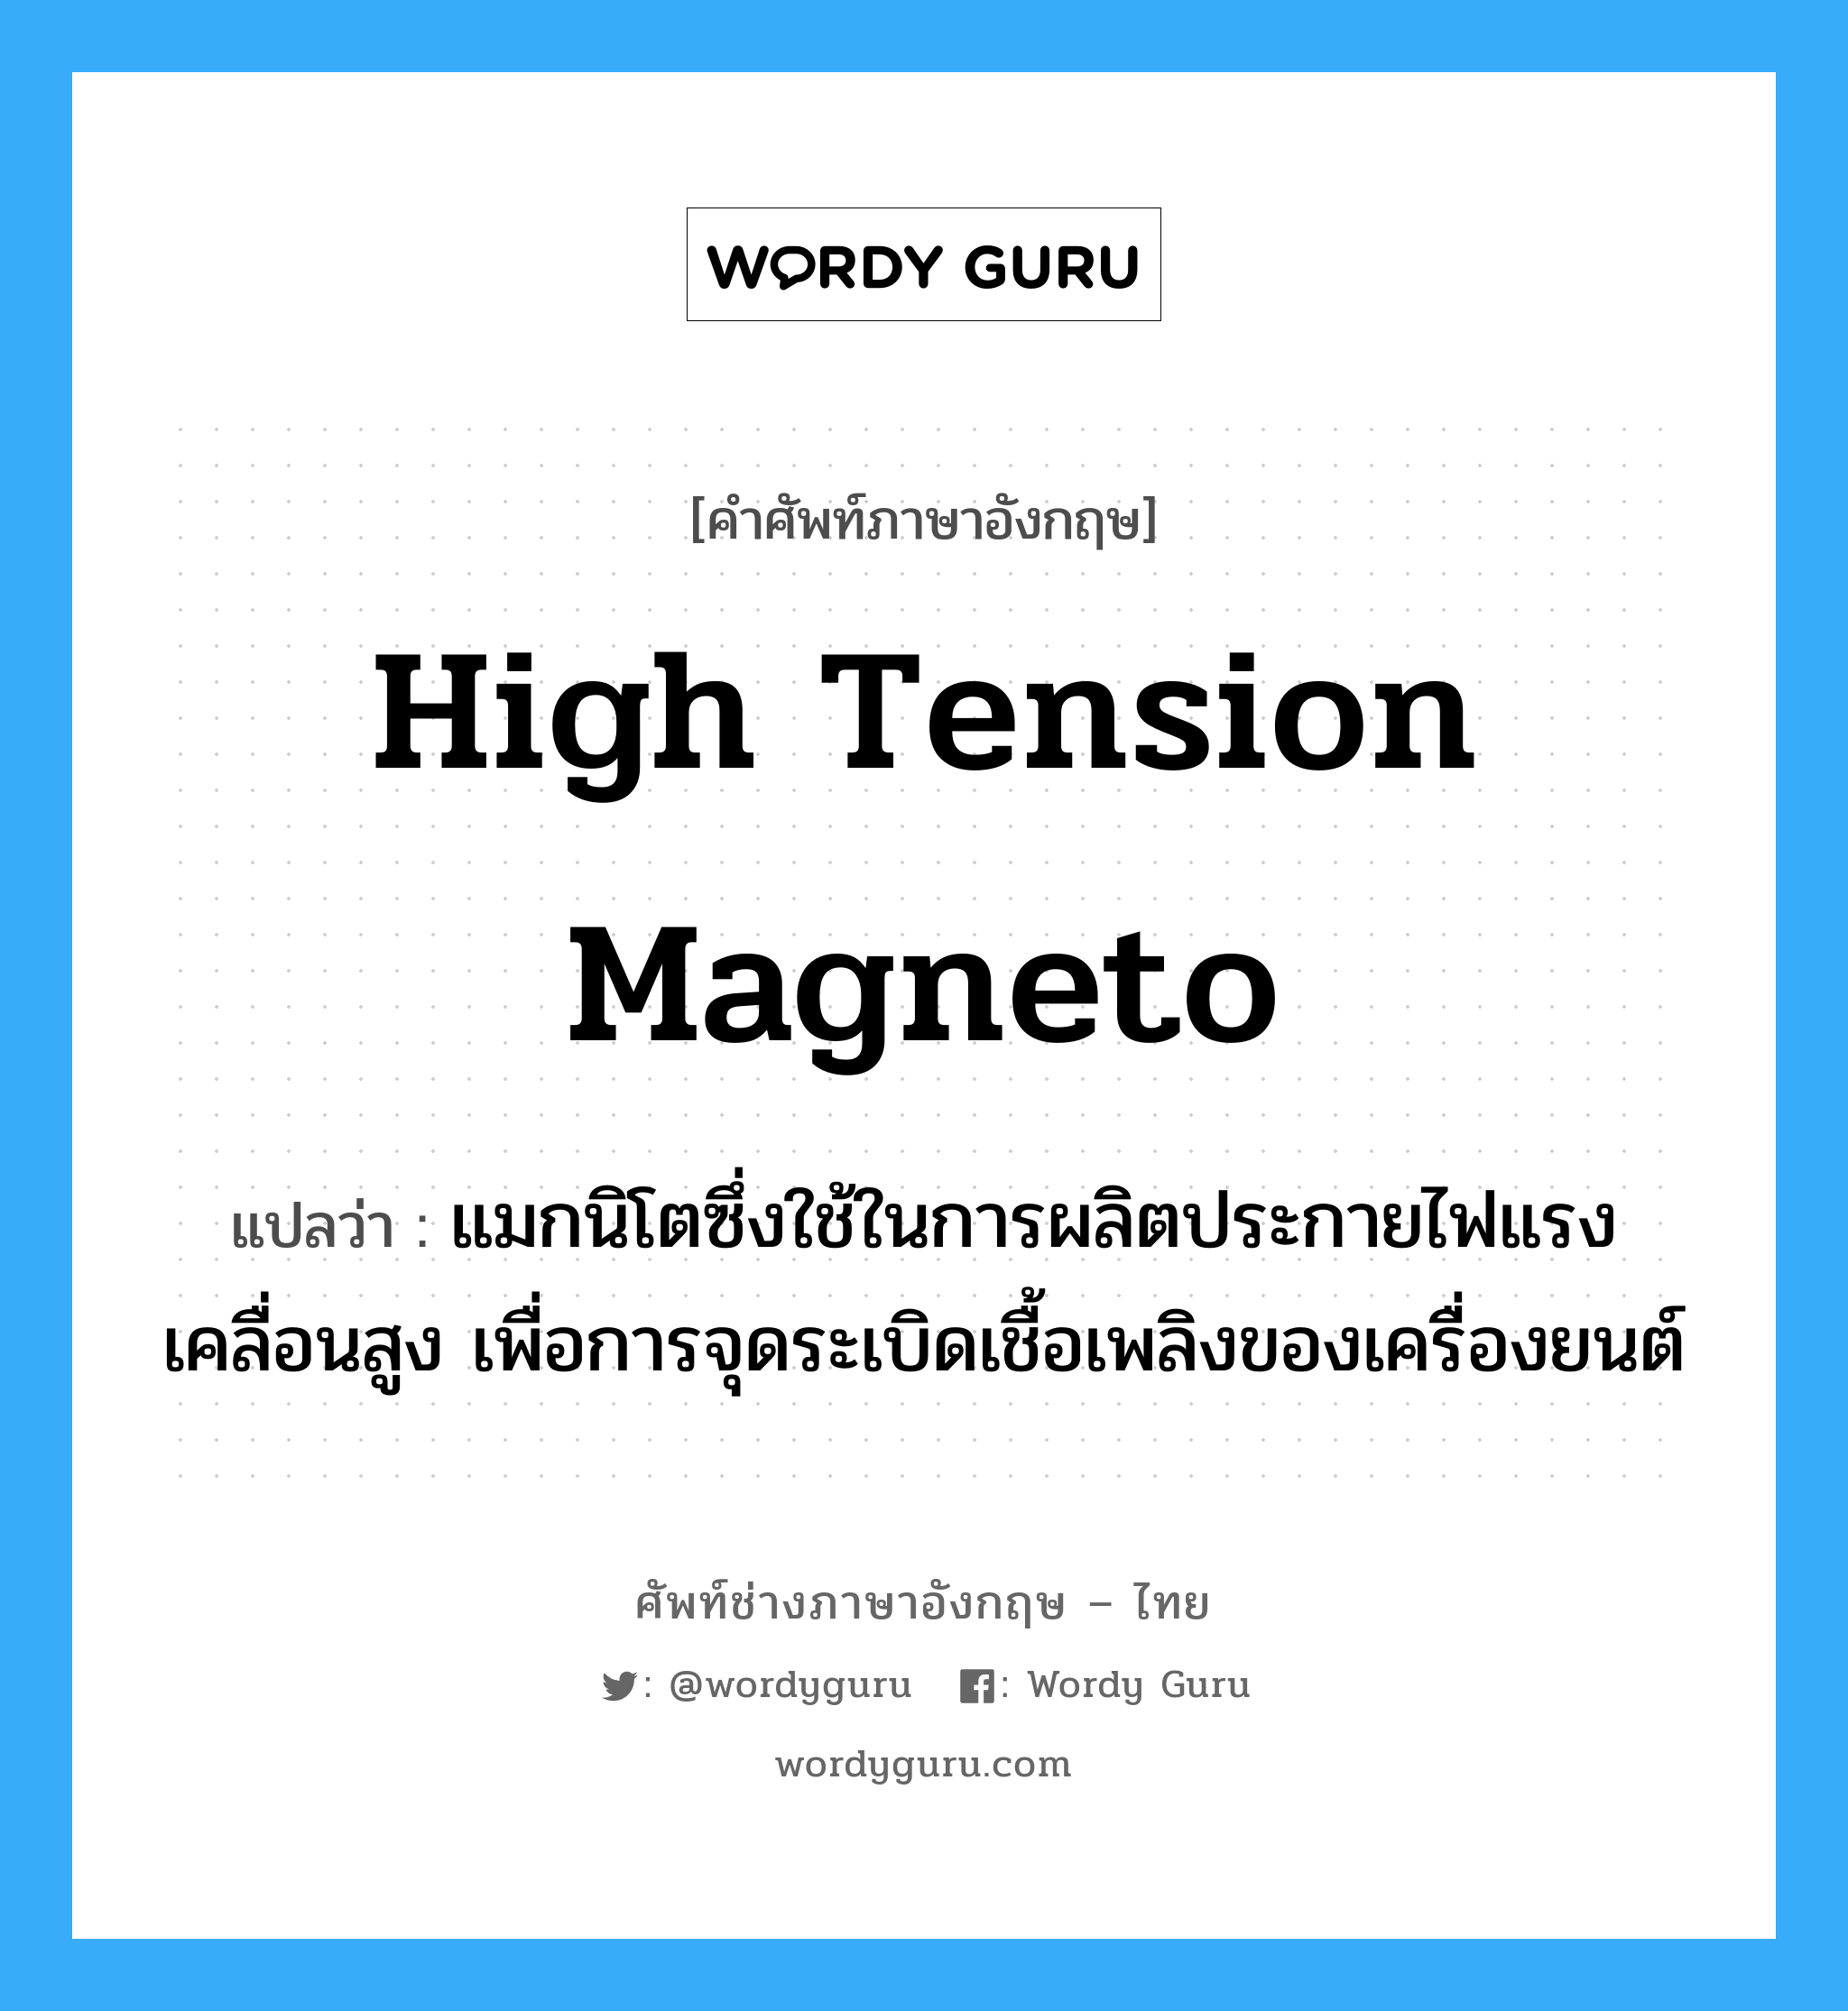 high tension magneto แปลว่า?, คำศัพท์ช่างภาษาอังกฤษ - ไทย high tension magneto คำศัพท์ภาษาอังกฤษ high tension magneto แปลว่า แมกนิโตซึ่งใช้ในการผลิตประกายไฟแรงเคลื่อนสูง เพื่อการจุดระเบิดเชื้อเพลิงของเครื่องยนต์